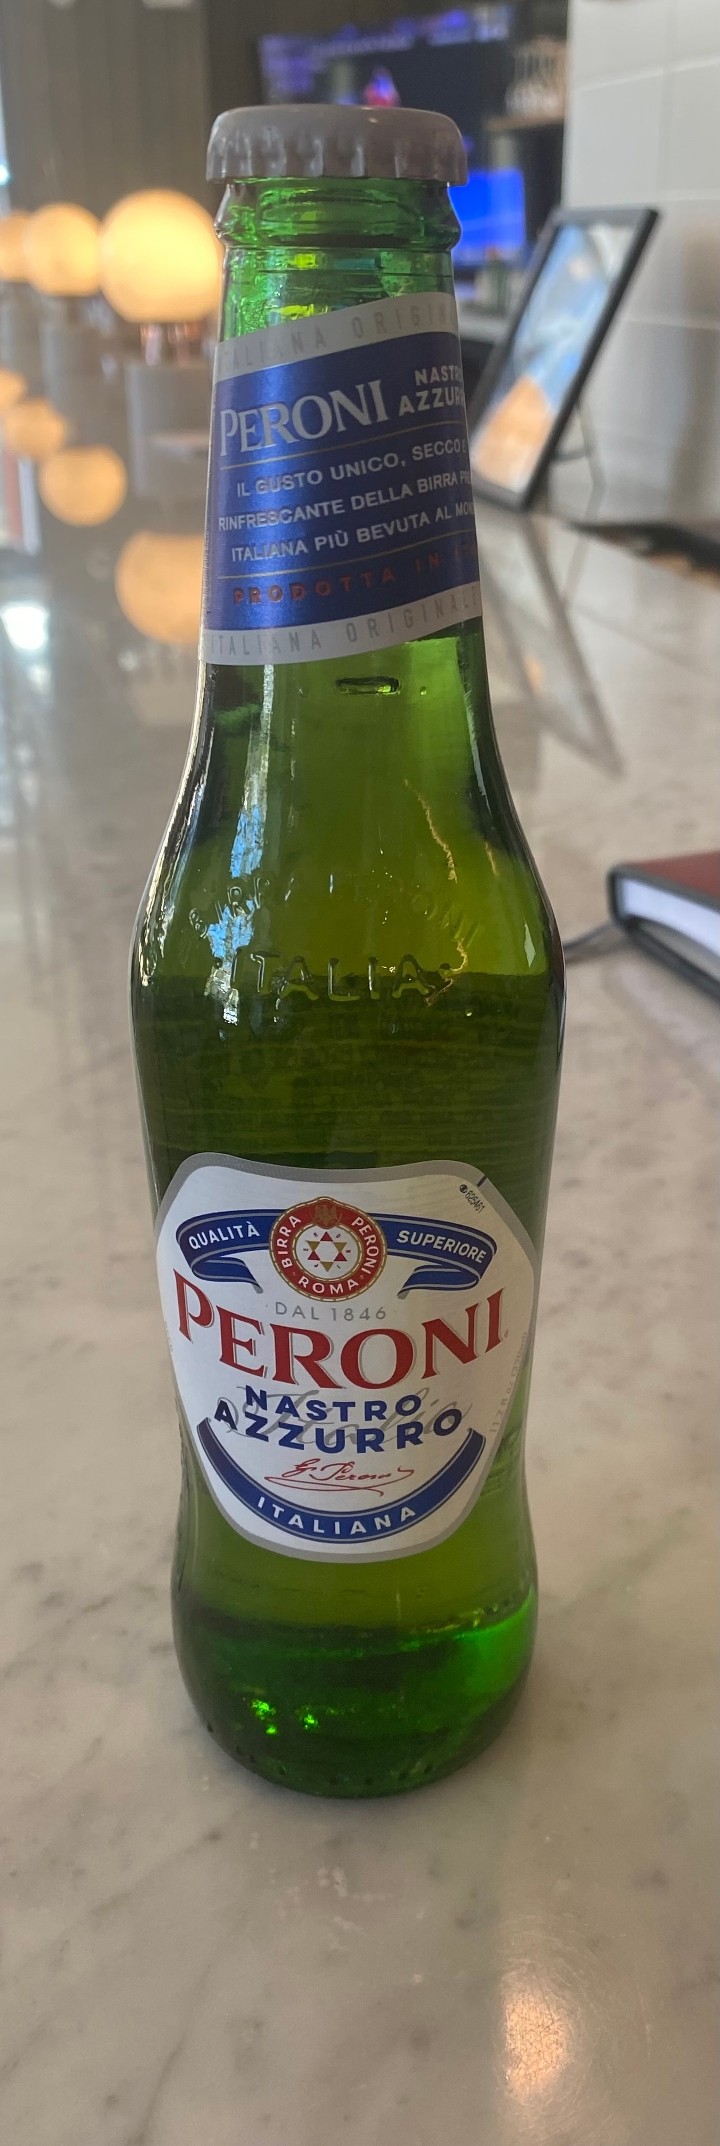 Single Beer - Peroni